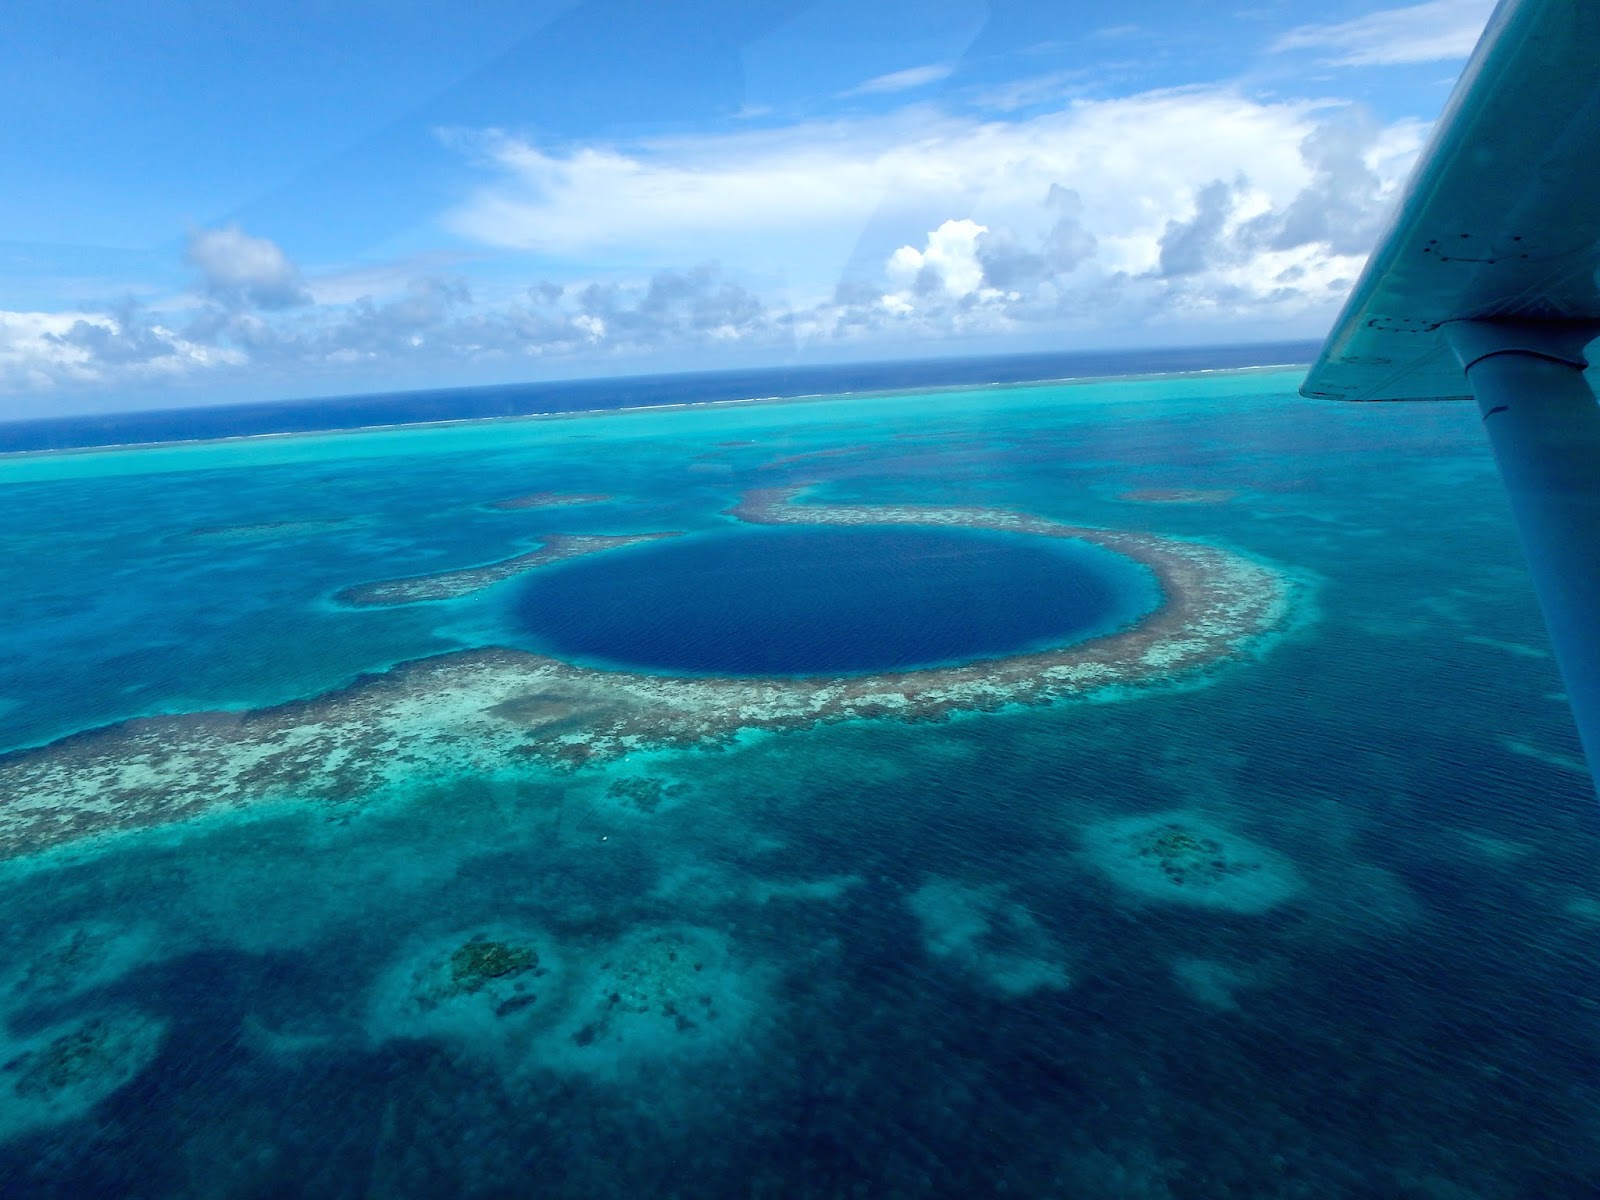 Сами больше море в мире. Большая голубая дыра, Лайтхаус-риф. Барьерный риф Белиз. Юкатан полуостров большая голубая дыра. Большая голубая дыра Белиз Центральная Америка.